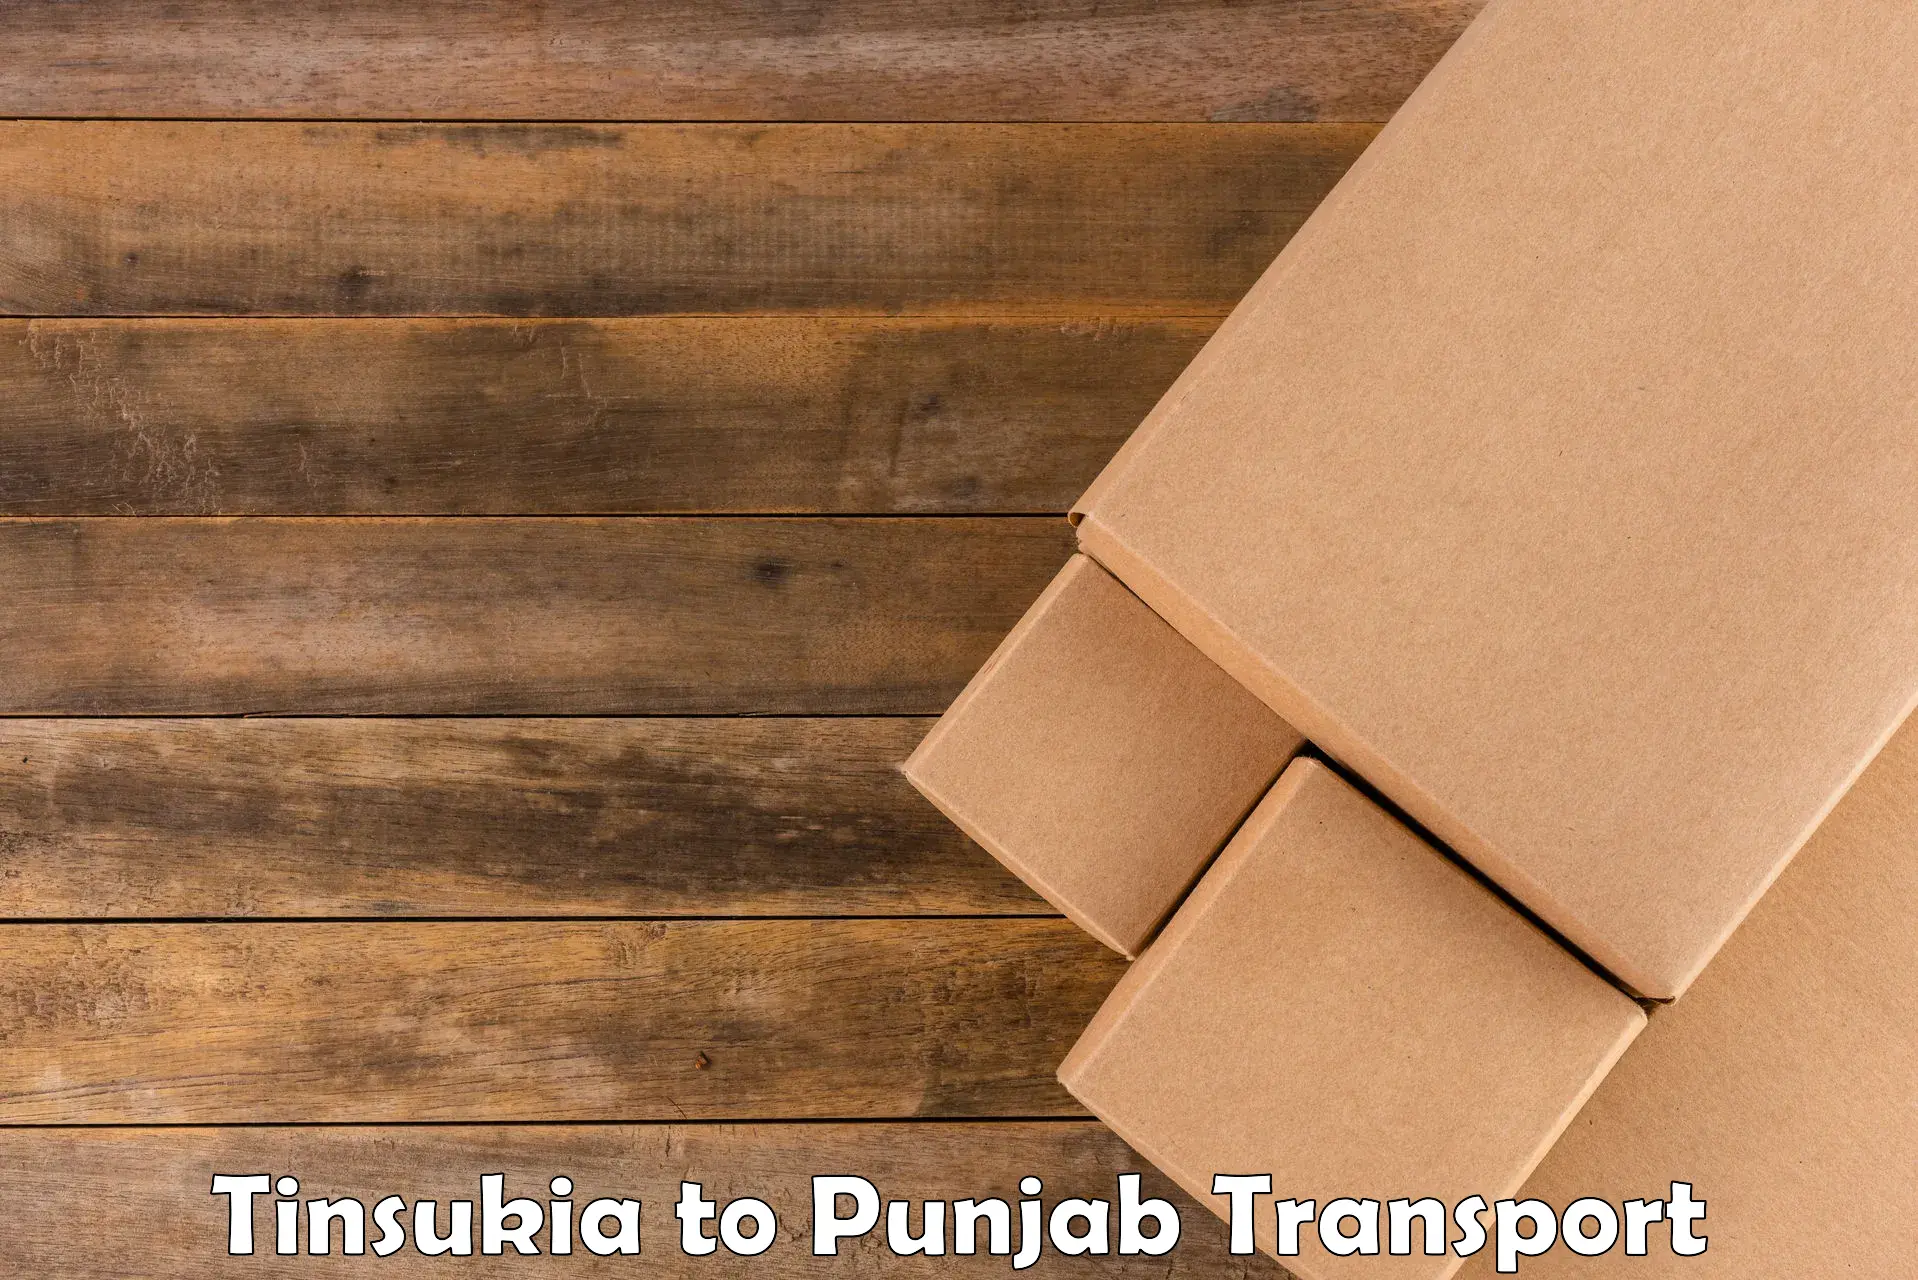 Online transport service Tinsukia to Gurdaspur